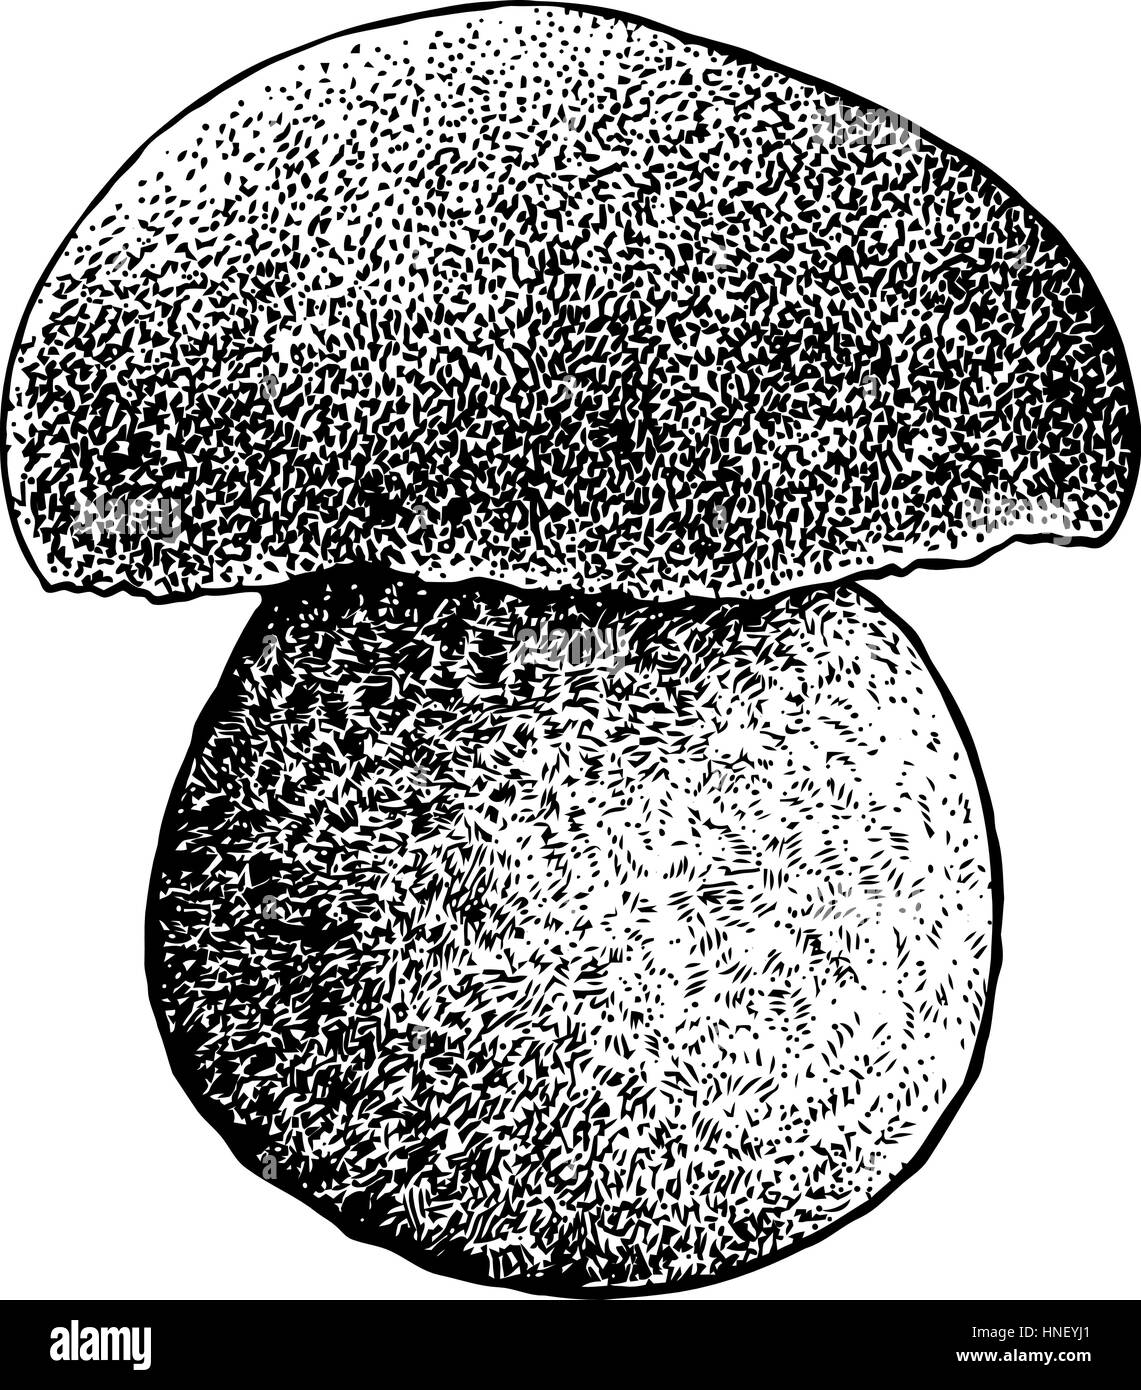 Boletus mushroom illustration, drawing, engraving, line art Stock Vector